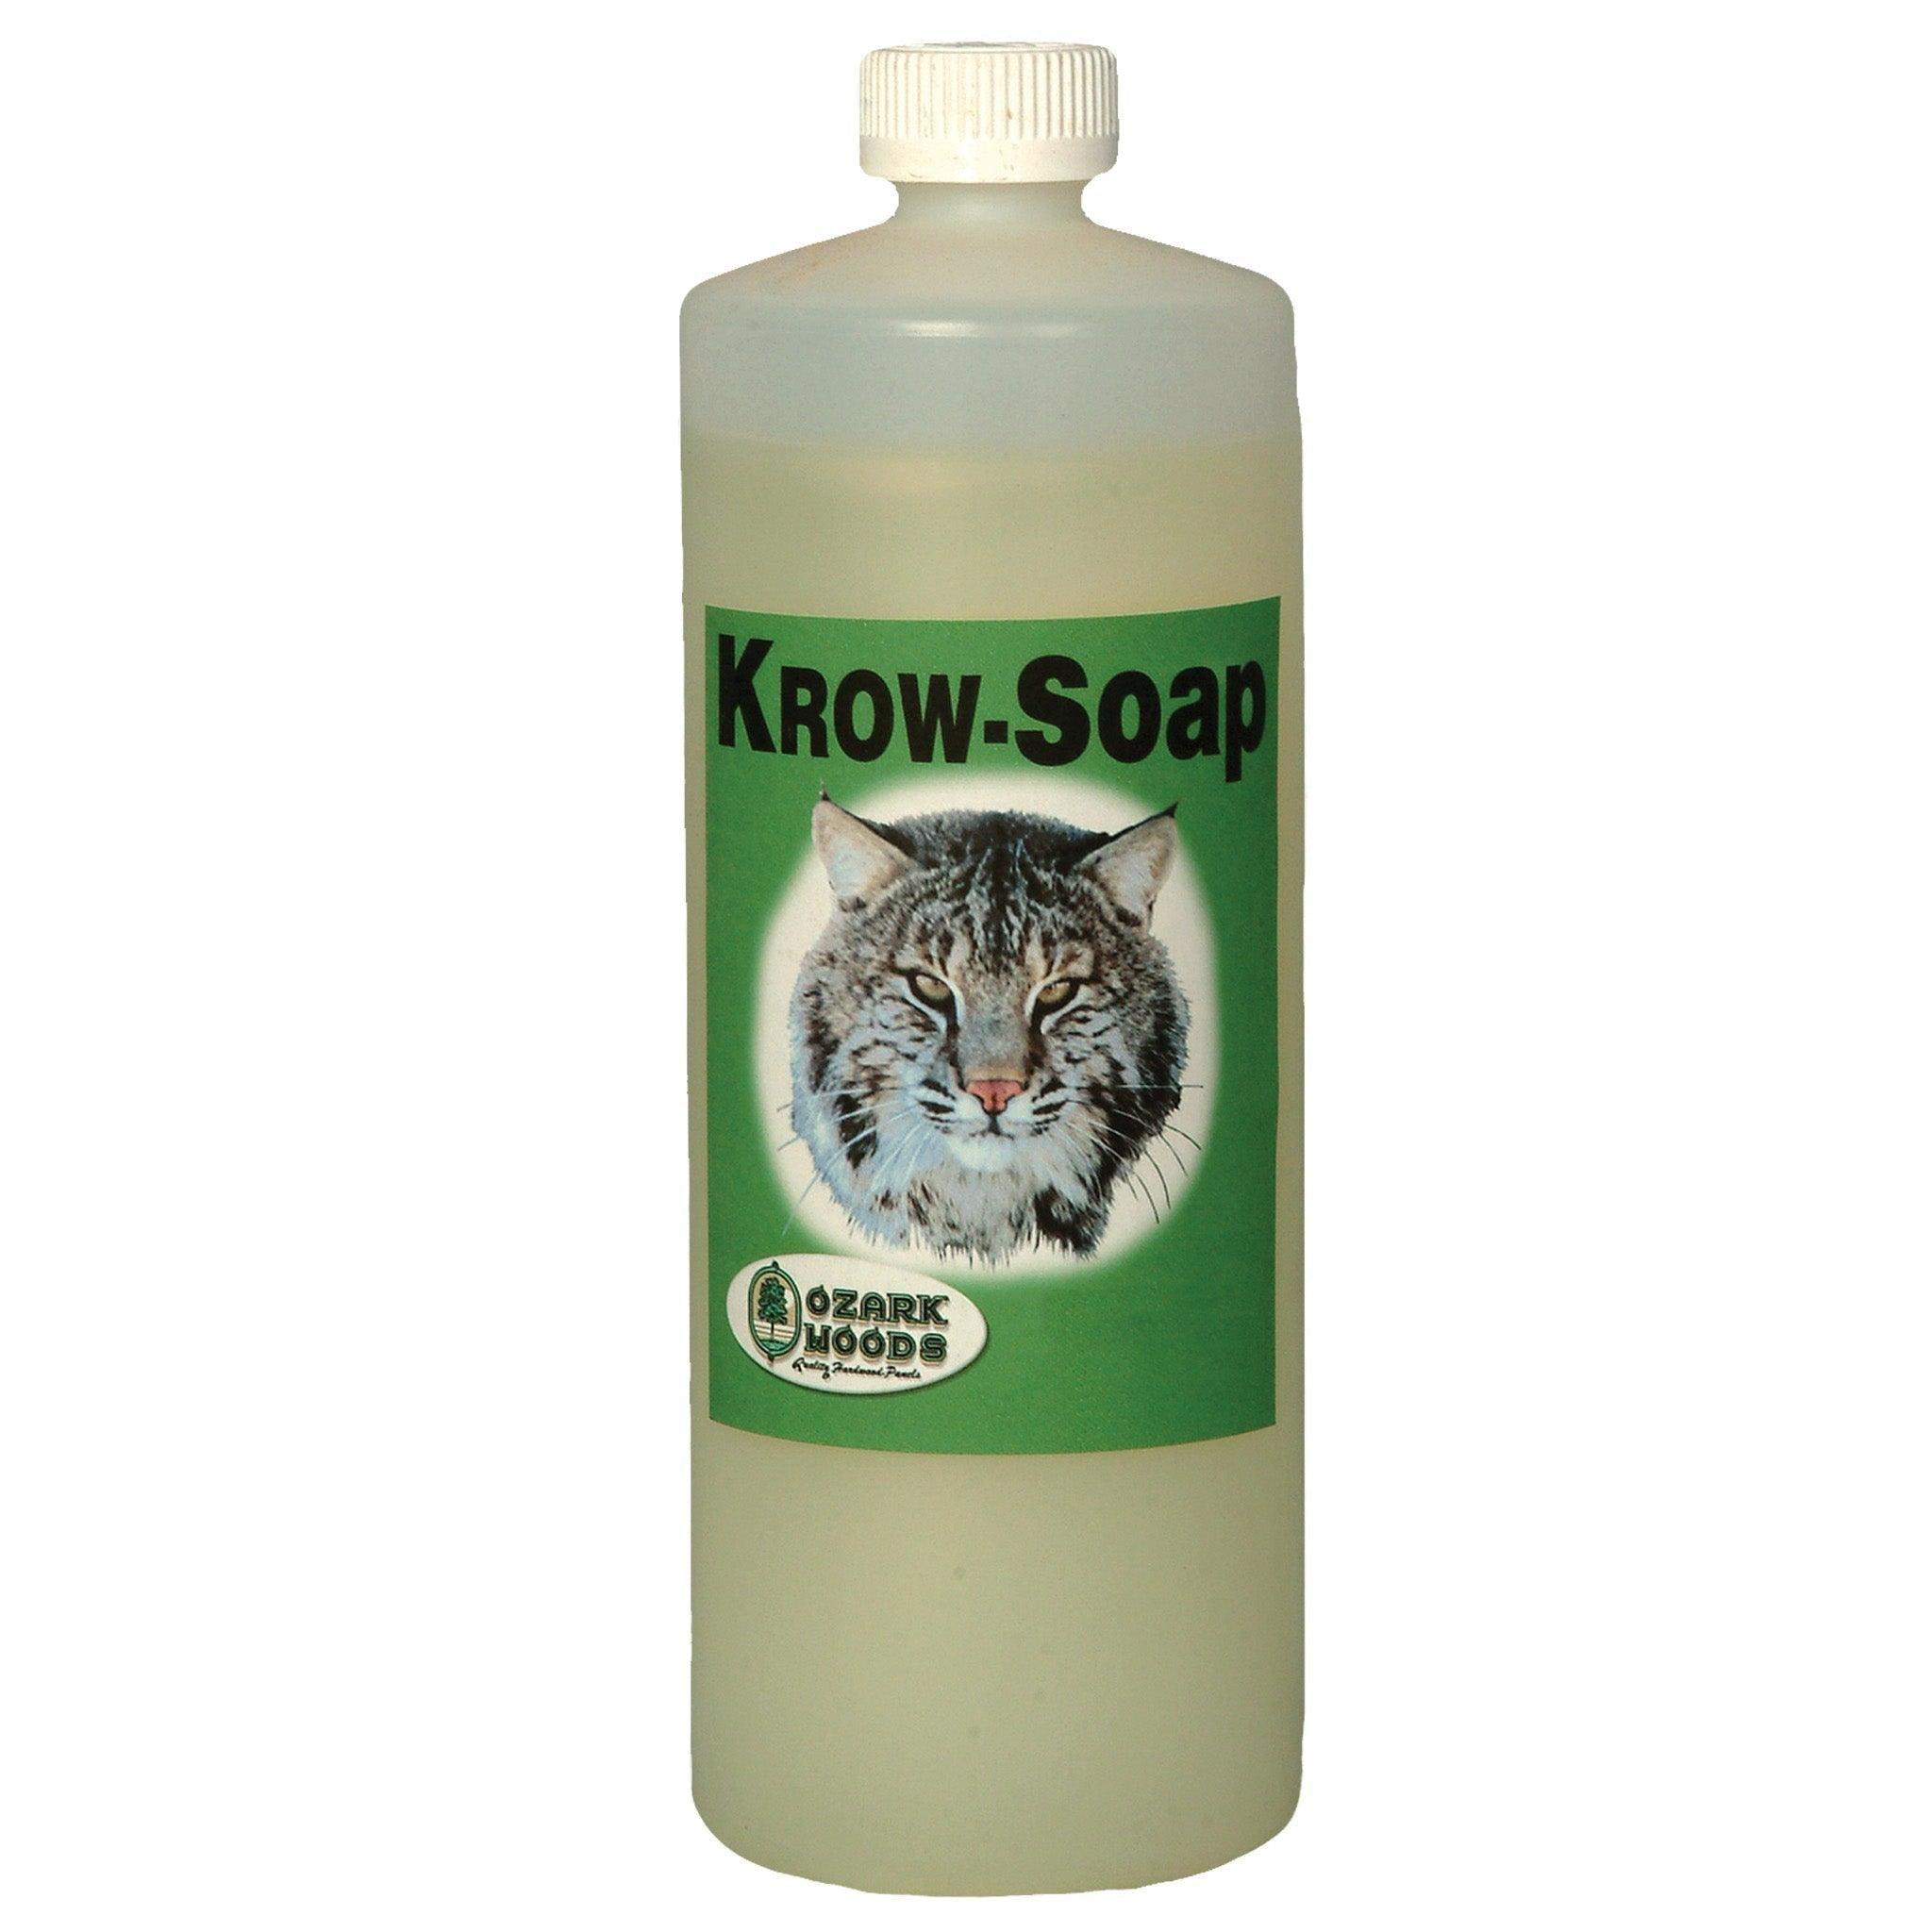 Krow-Soap - Matuska Taxidermy Supply Company